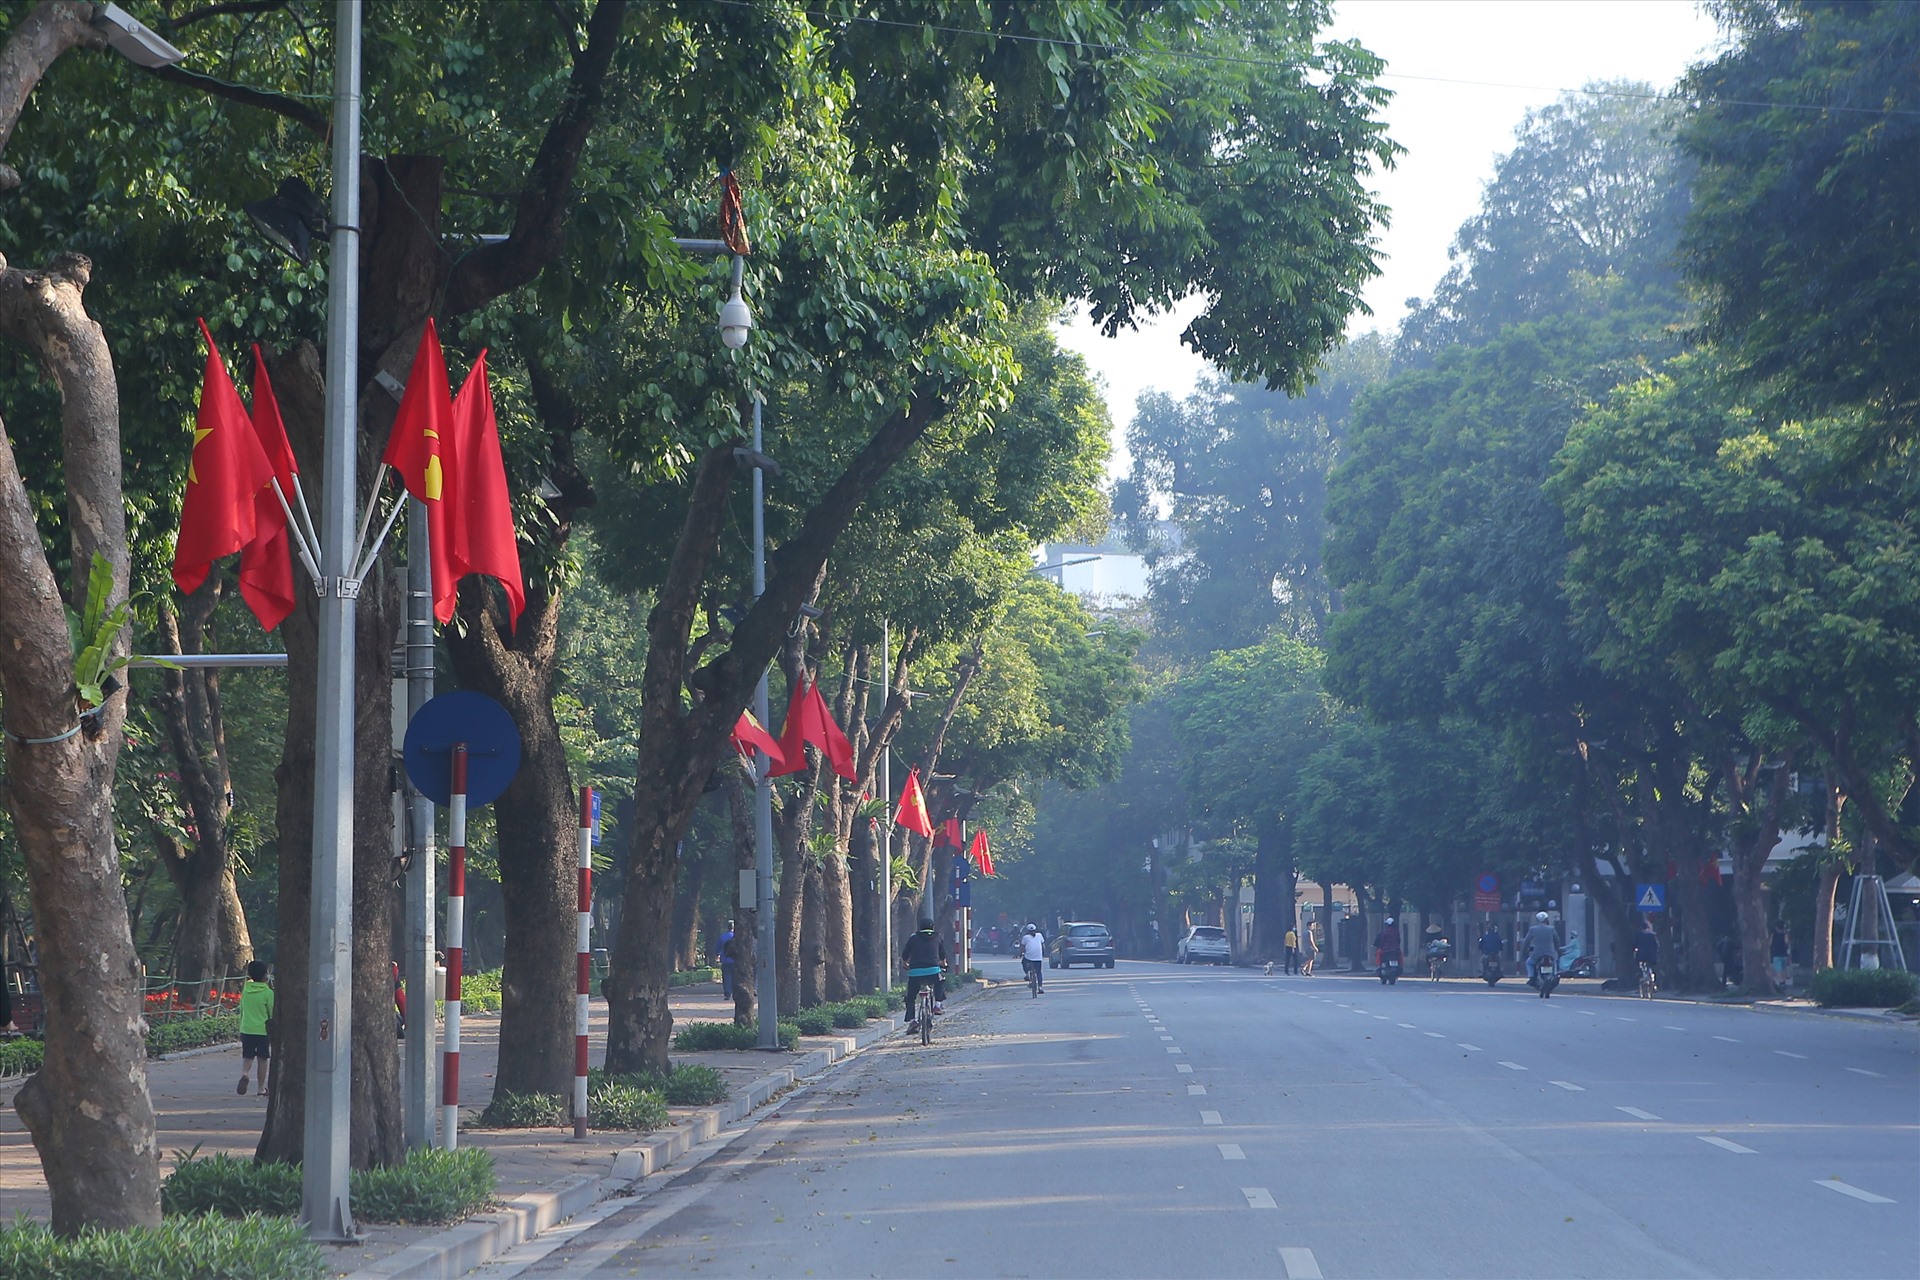 Đường phố Hà Nội những ngày này rực rỡ, hình ảnh cờ đỏ sao vàng rợp phố phường đã trở thành nét đặc trưng thiêng liêng mỗi khi đến ngày lễ trọng đại của dân tộc - Ngày Giải phóng miền Nam, thống nhất đất nước 30.4 và Ngày Quốc tế lao động. Ảnh: Cường Hoan